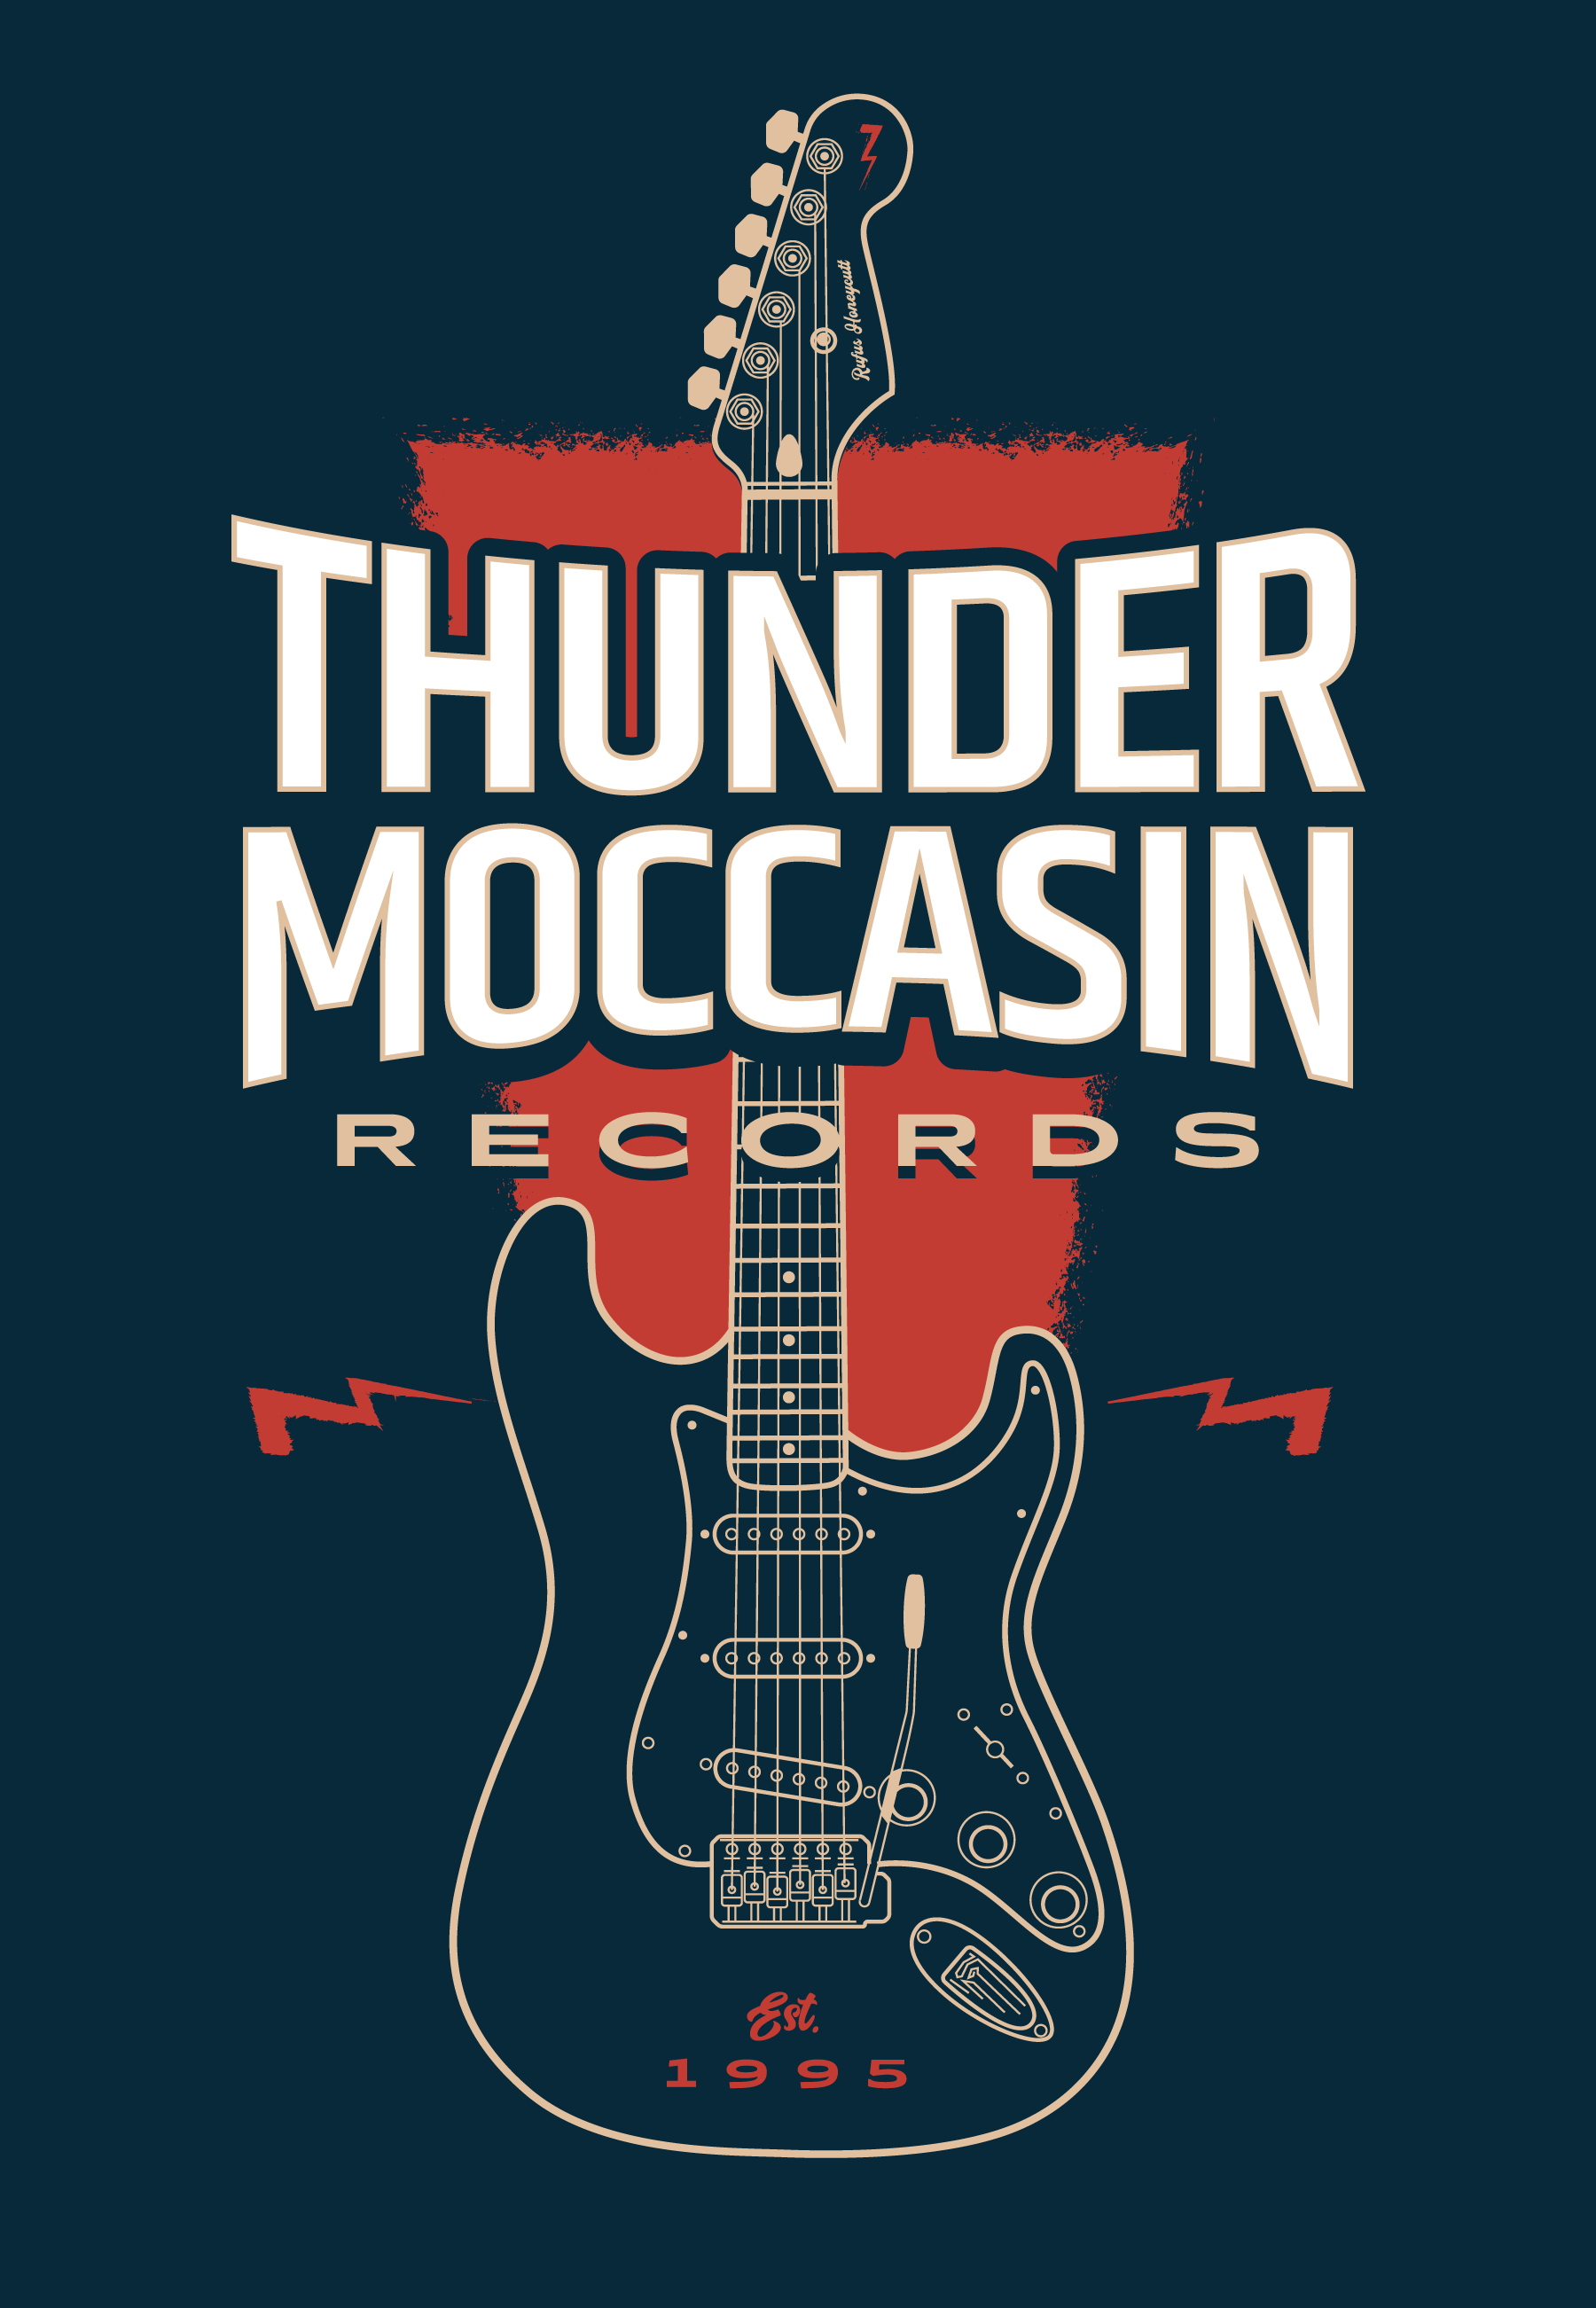 Thunder Moccasin logo